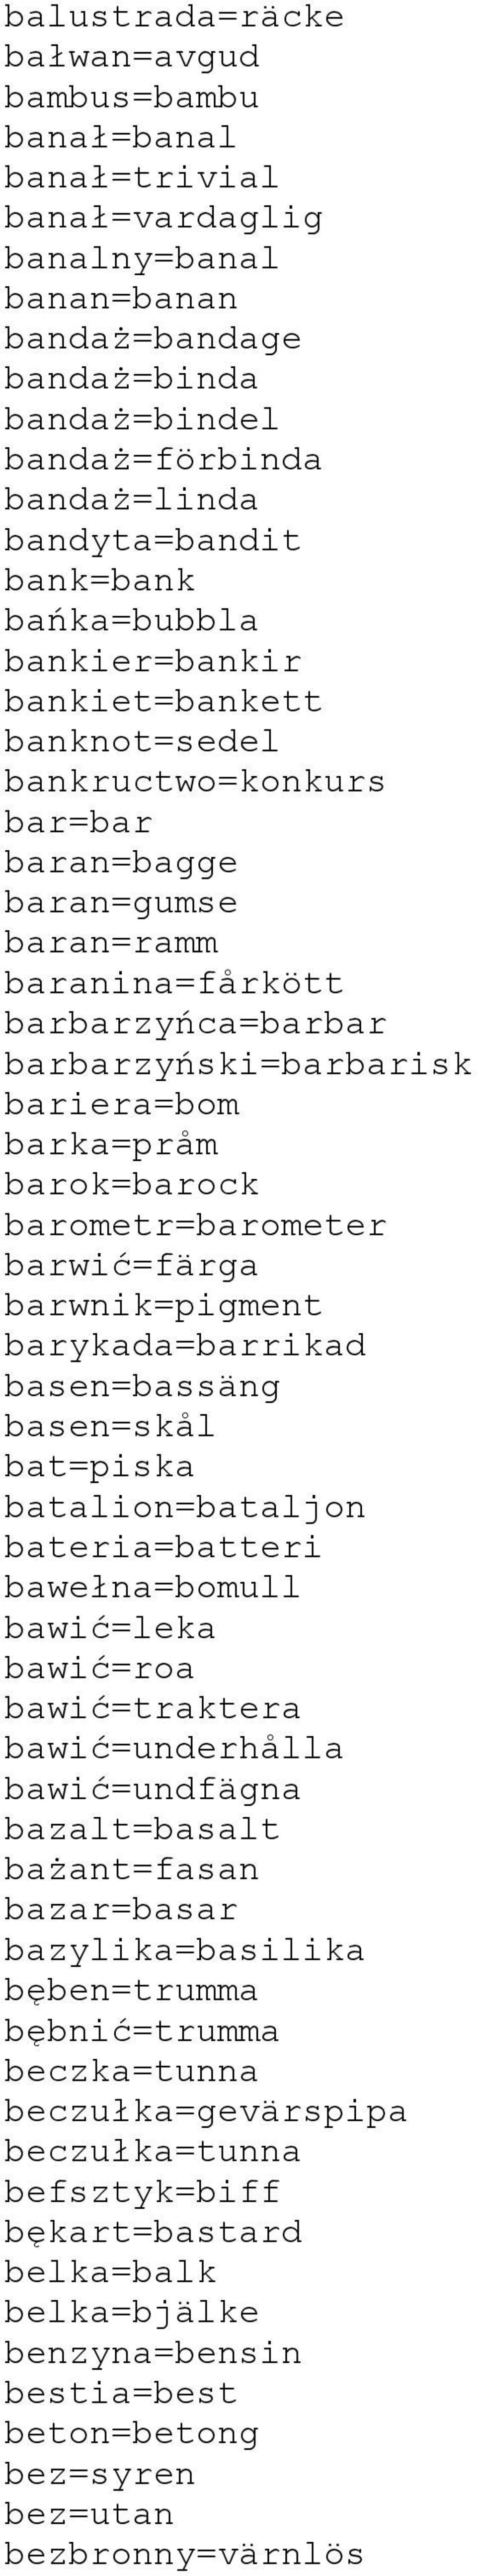 bariera=bom barka=pråm barok=barock barometr=barometer barwić=färga barwnik=pigment barykada=barrikad basen=bassäng basen=skål bat=piska batalion=bataljon bateria=batteri bawełna=bomull bawić=leka